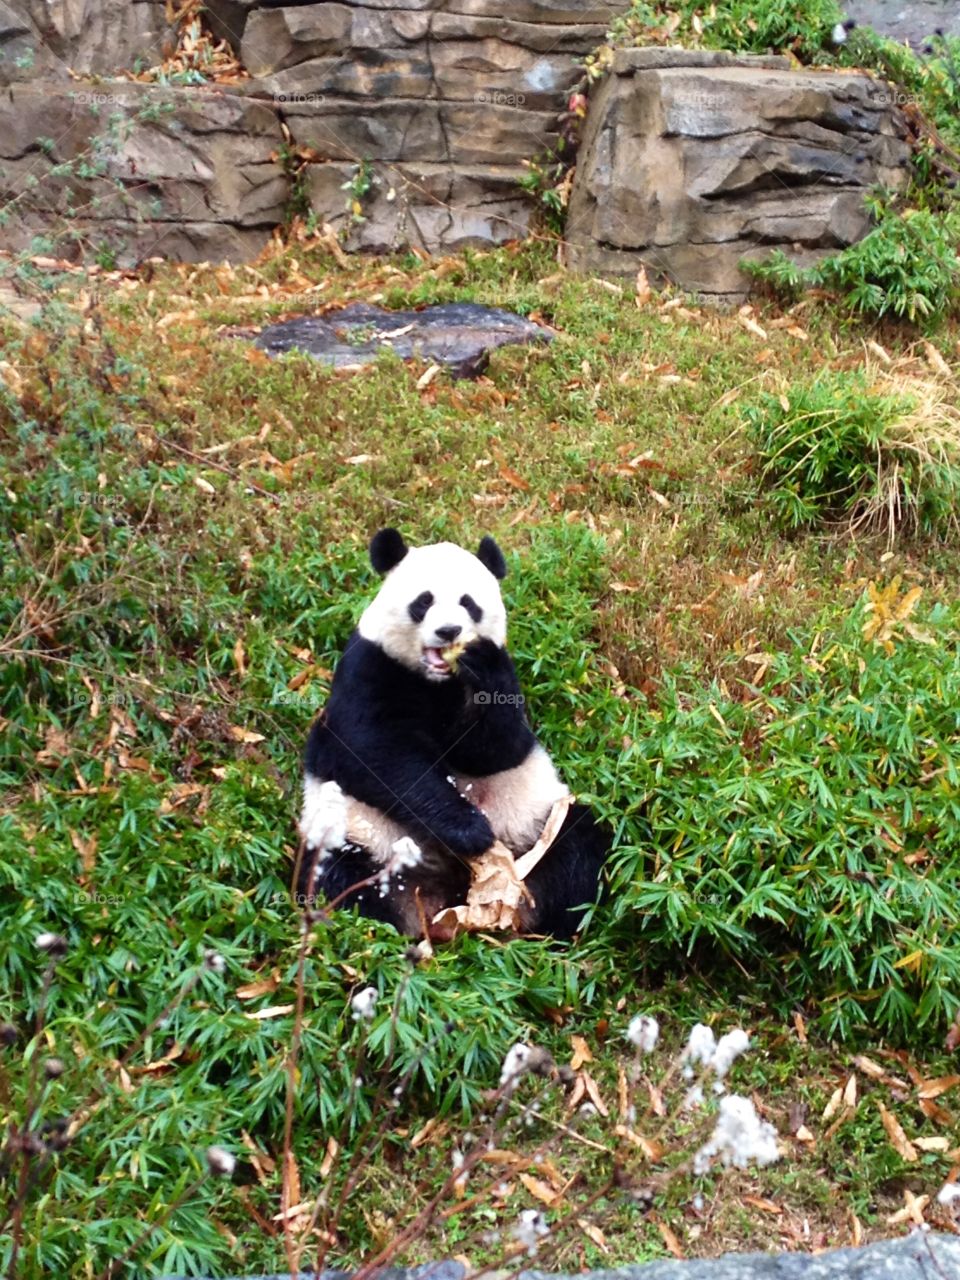 Giant panda eats a snack